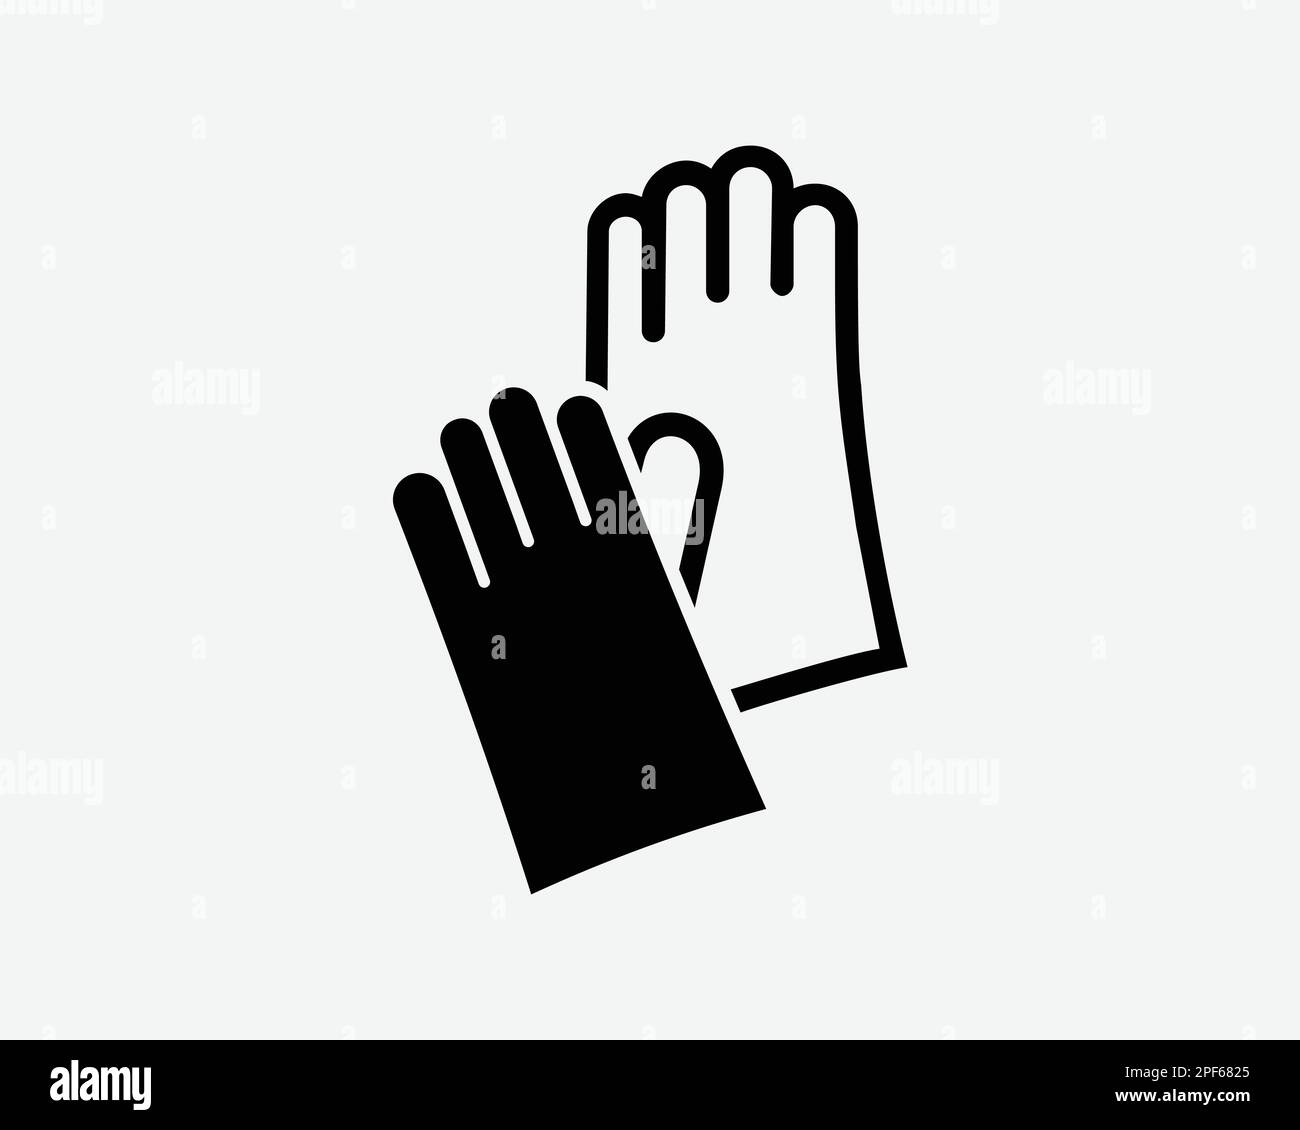 Handschuhe Symbol Handschutz Latex Gummi Medizinisches Umrisspaar Schwarz Weiß Silhouette Symbol Zeichen Grafik Clipart Bildmaterial Piktogramm Vektor Stock Vektor